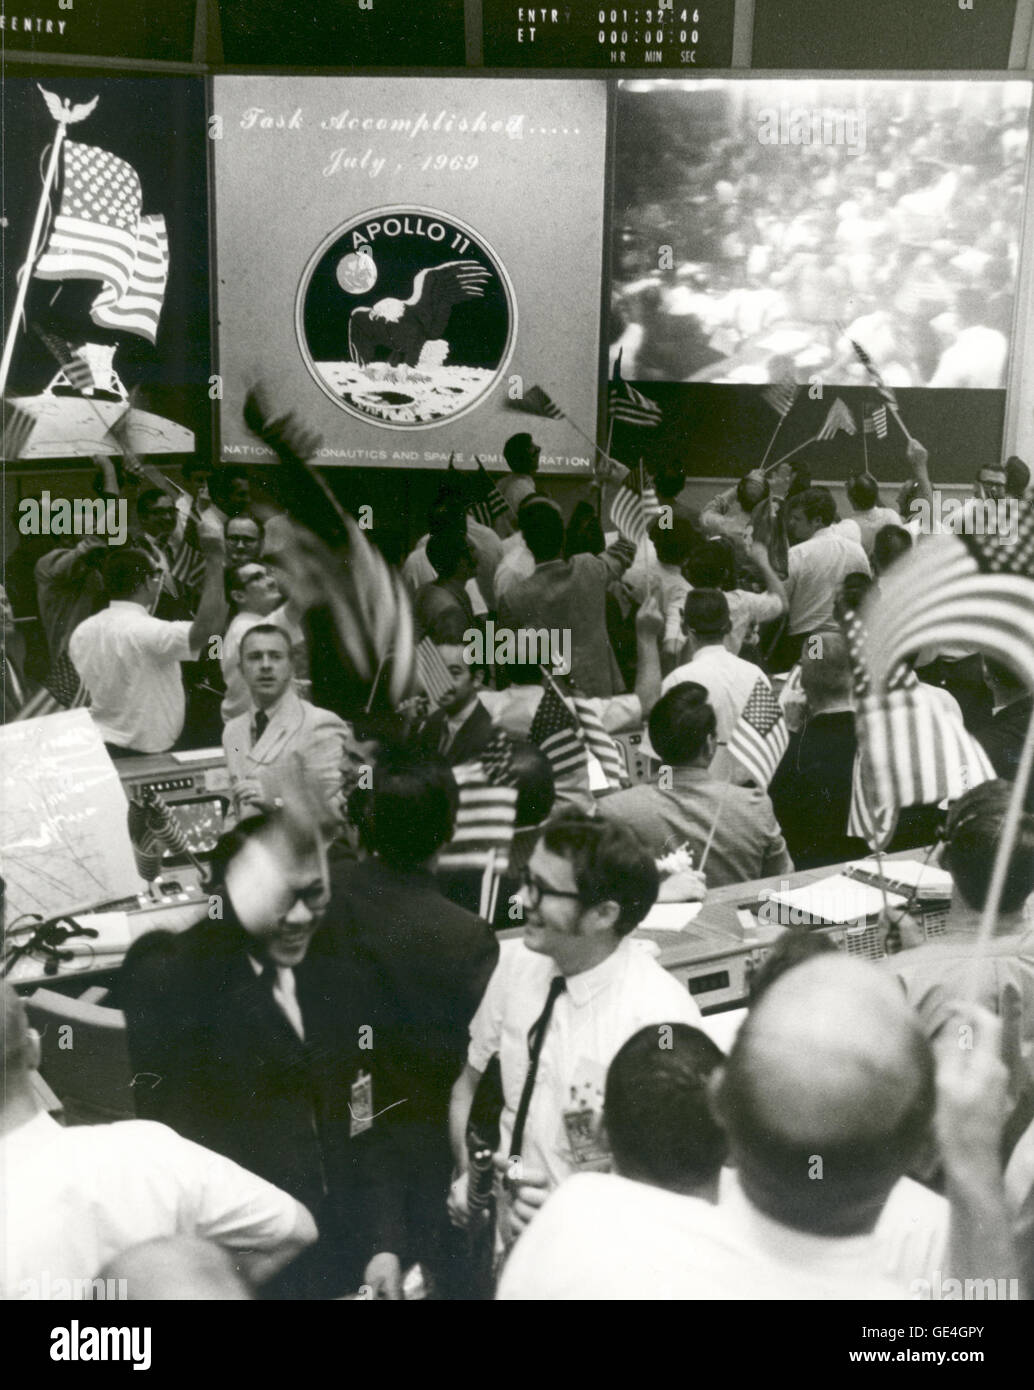 (24 Juli 1969) Gesamtansicht der Mission Operations Control Room in das Mission Control Center, Gebäude 30, Manned Spacecraft Center zeigt die Fluglotsen feiert den erfolgreichen Abschluss der Mission Apollo 11 Mondlandung.  Bild-Nr.: S-69-40023 Stockfoto